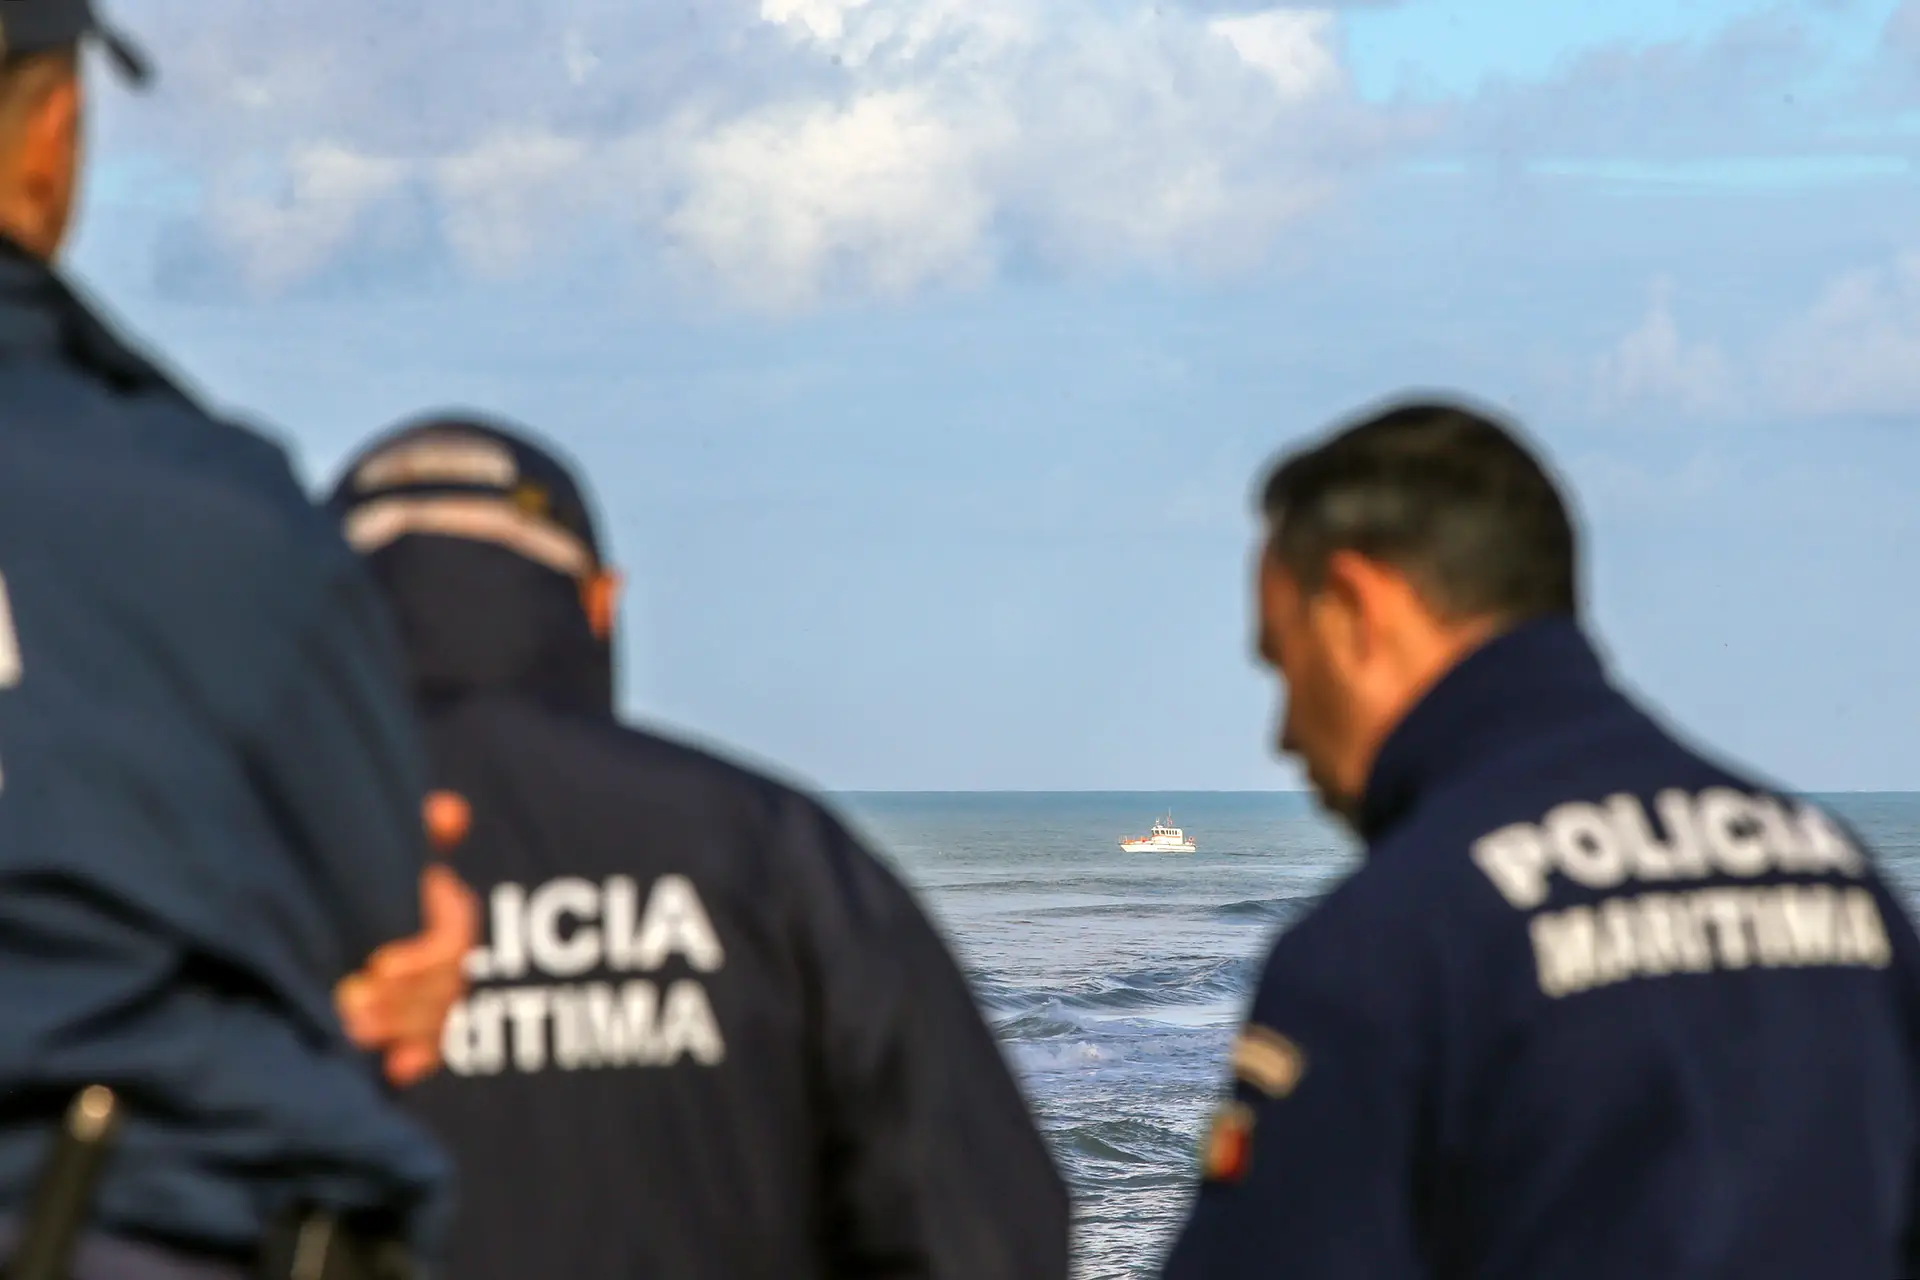 Resgatados 6 passageiros de embarcação turística em Lisboa